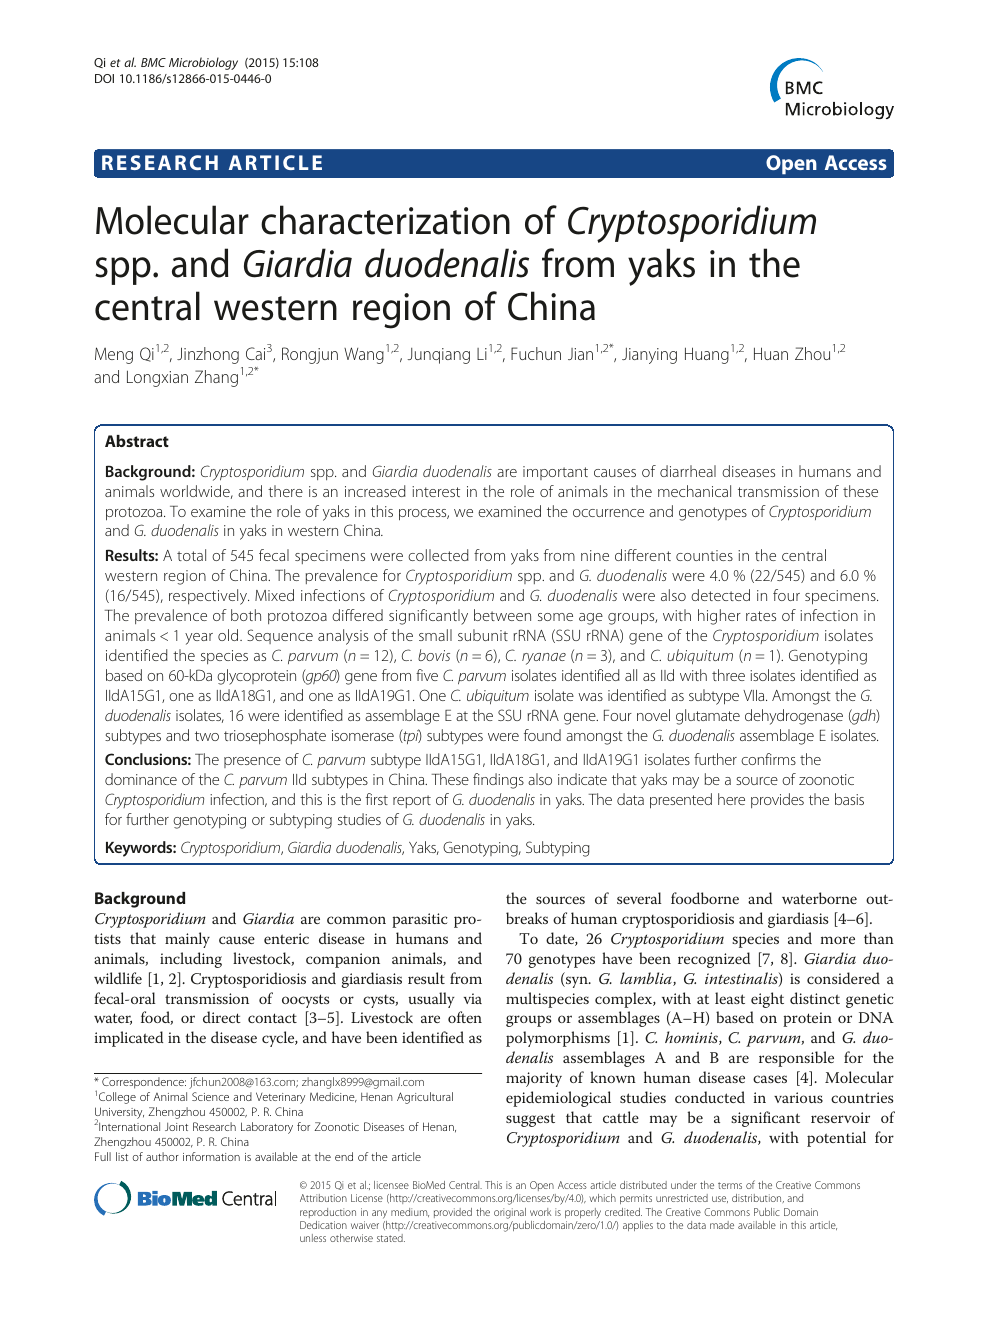 giardia and cryptosporidium from molecules to disease